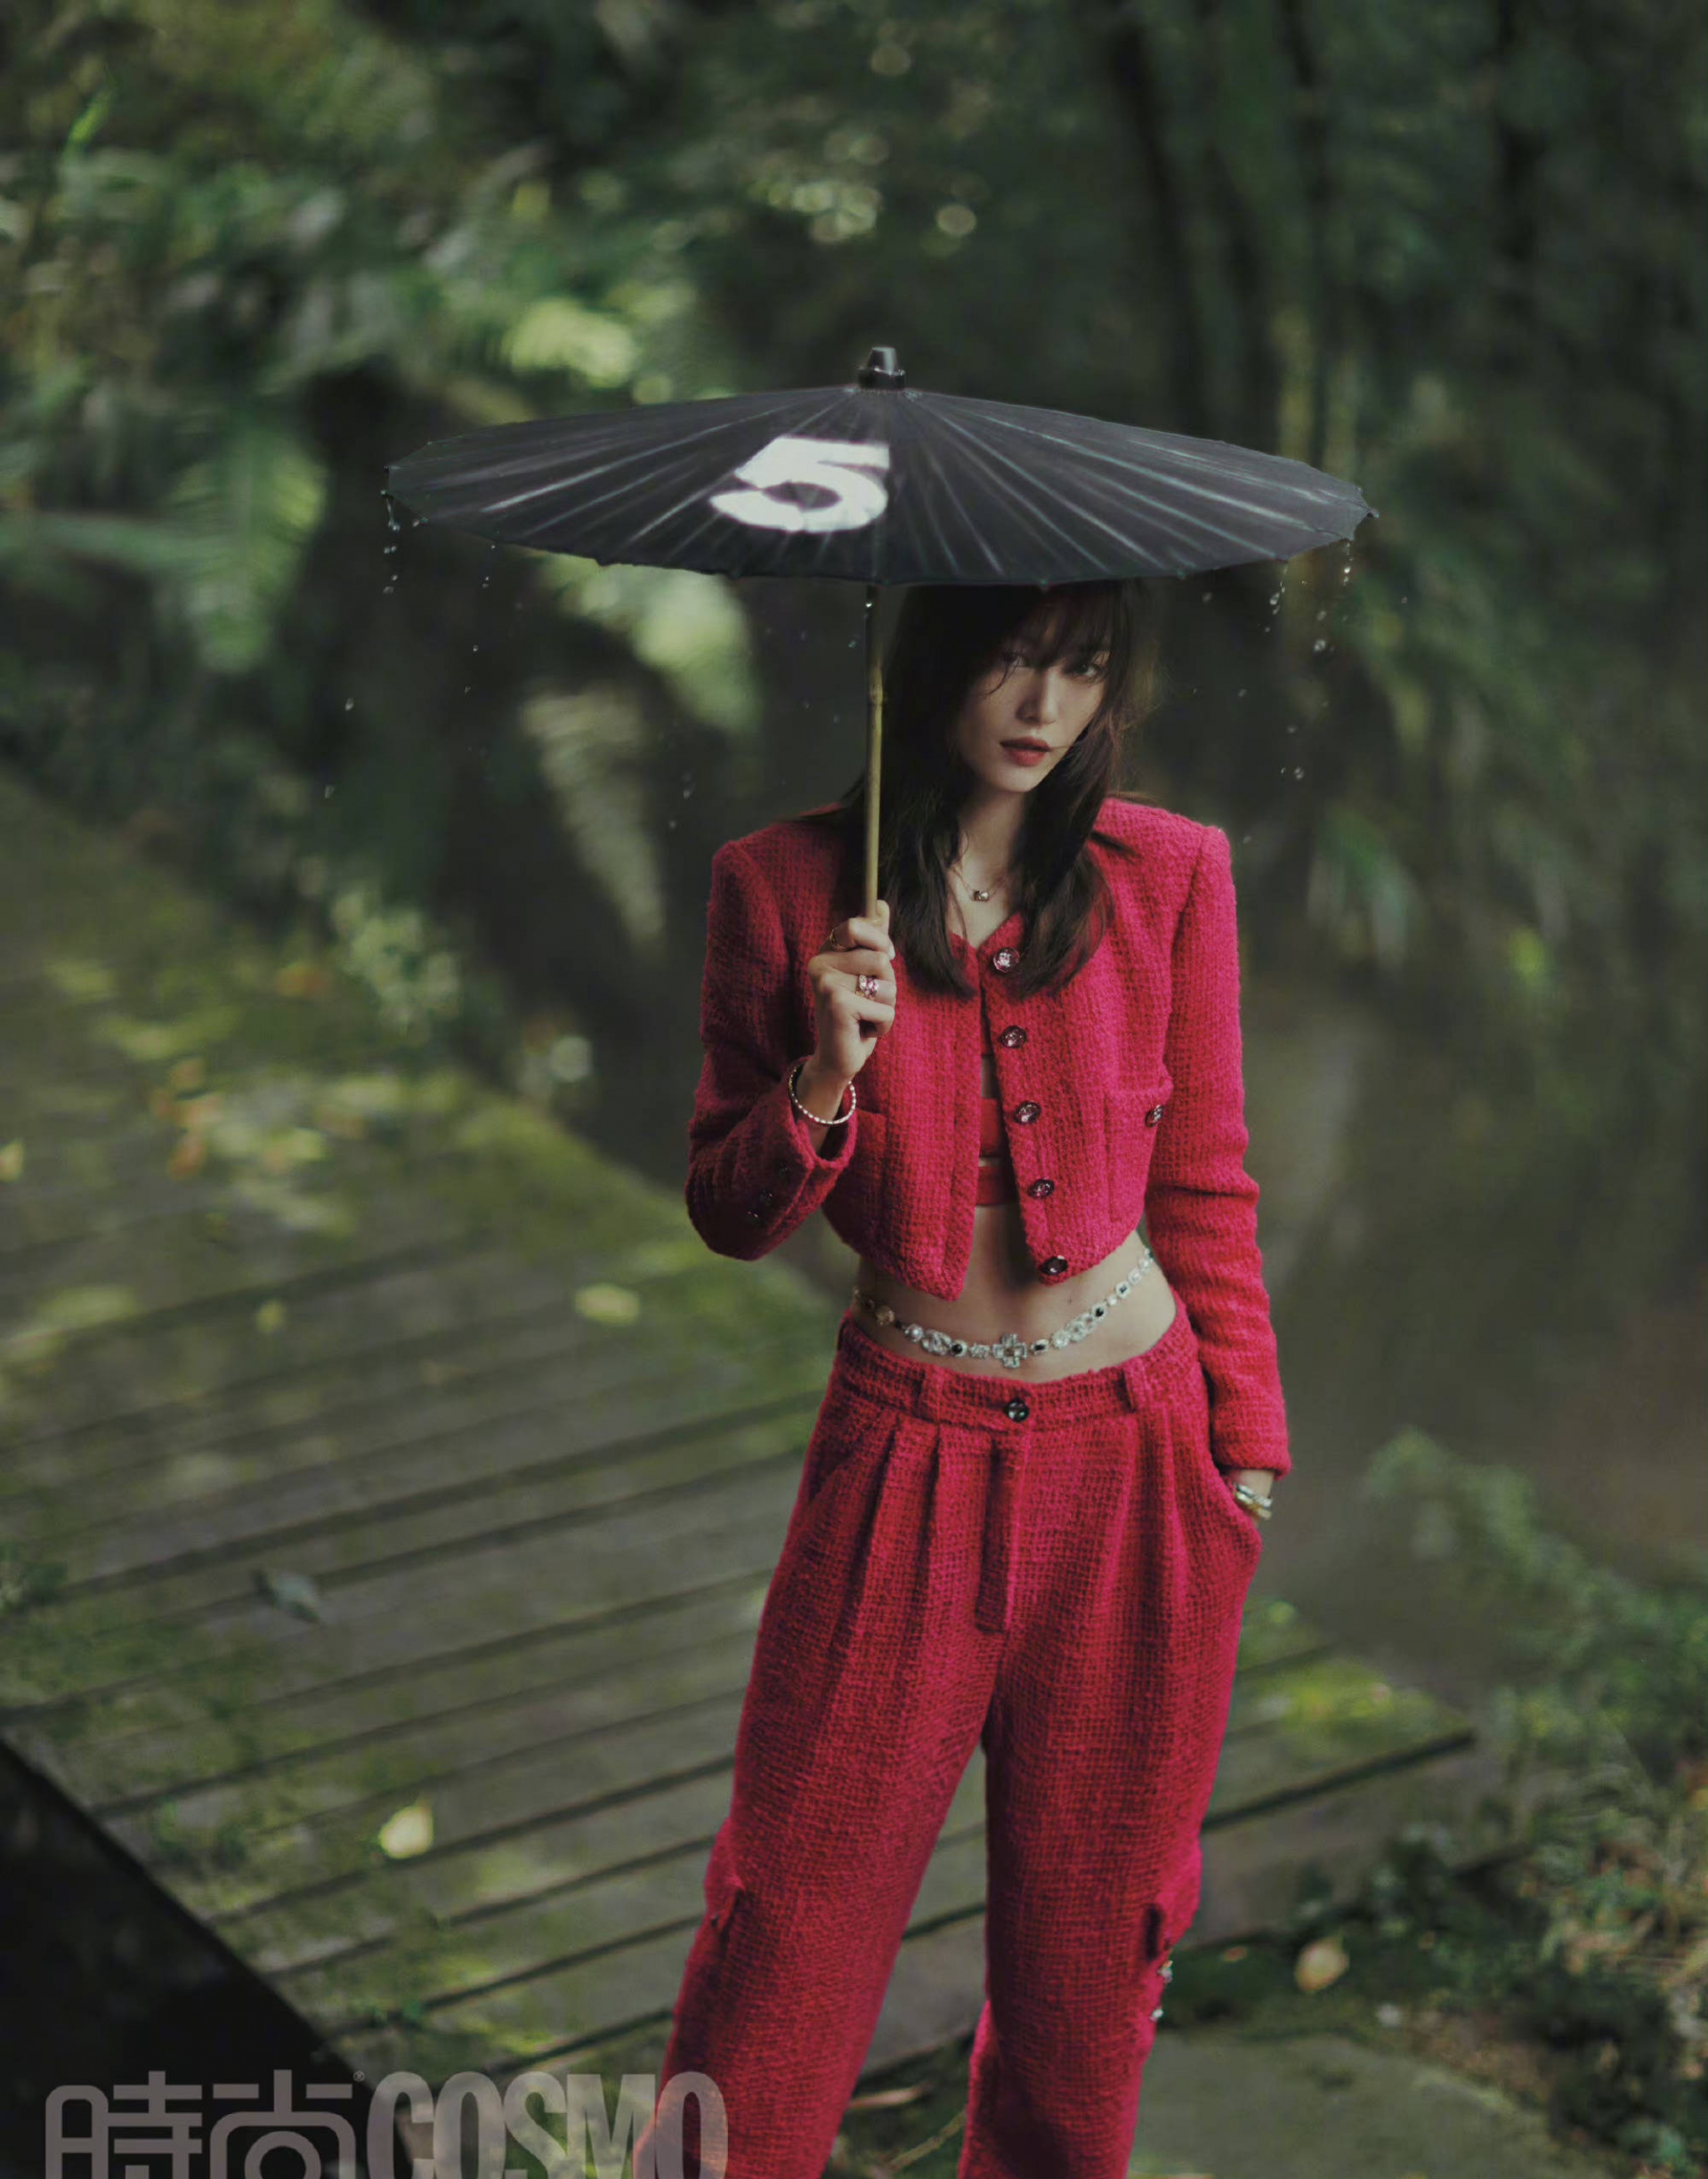 Liu Wen vô cùng thời thượng trong bộ crop top kết hợp blazer đỏ. Điểm nhấn chính là chiếc dây thắt eo kim sa khiến cô nàng thêm phần cá tính.